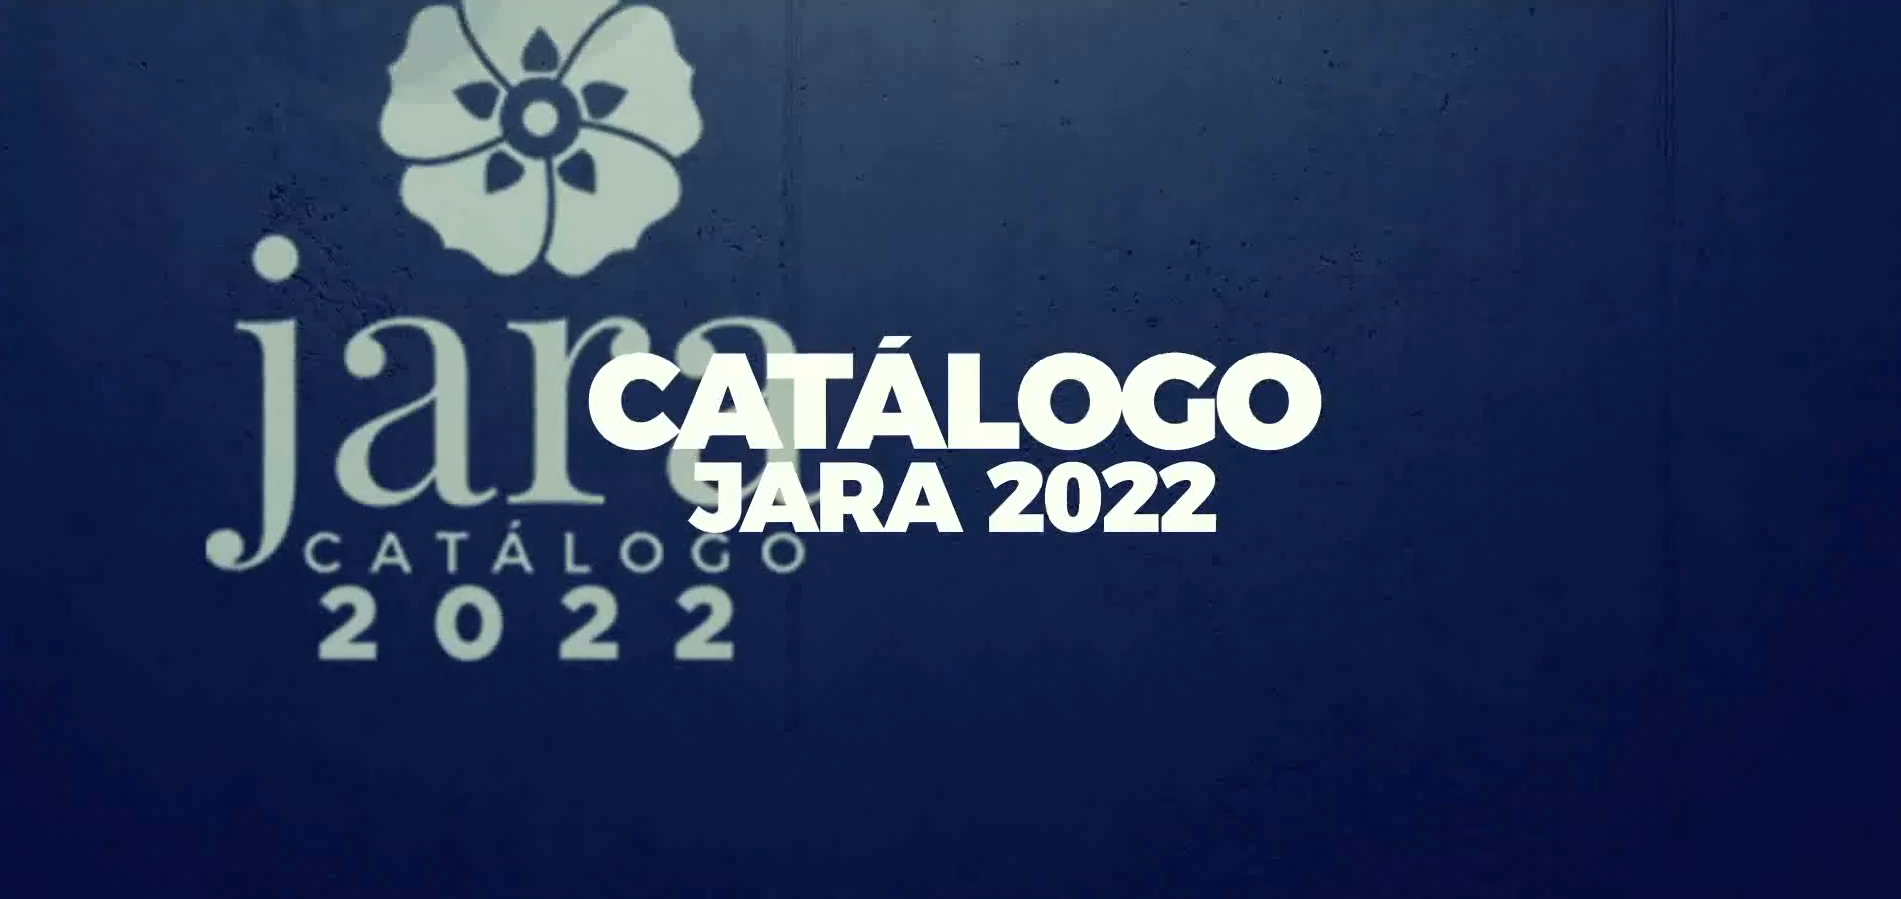 15 de Febrero, último día de inscripción para el catálogo Jara 2022